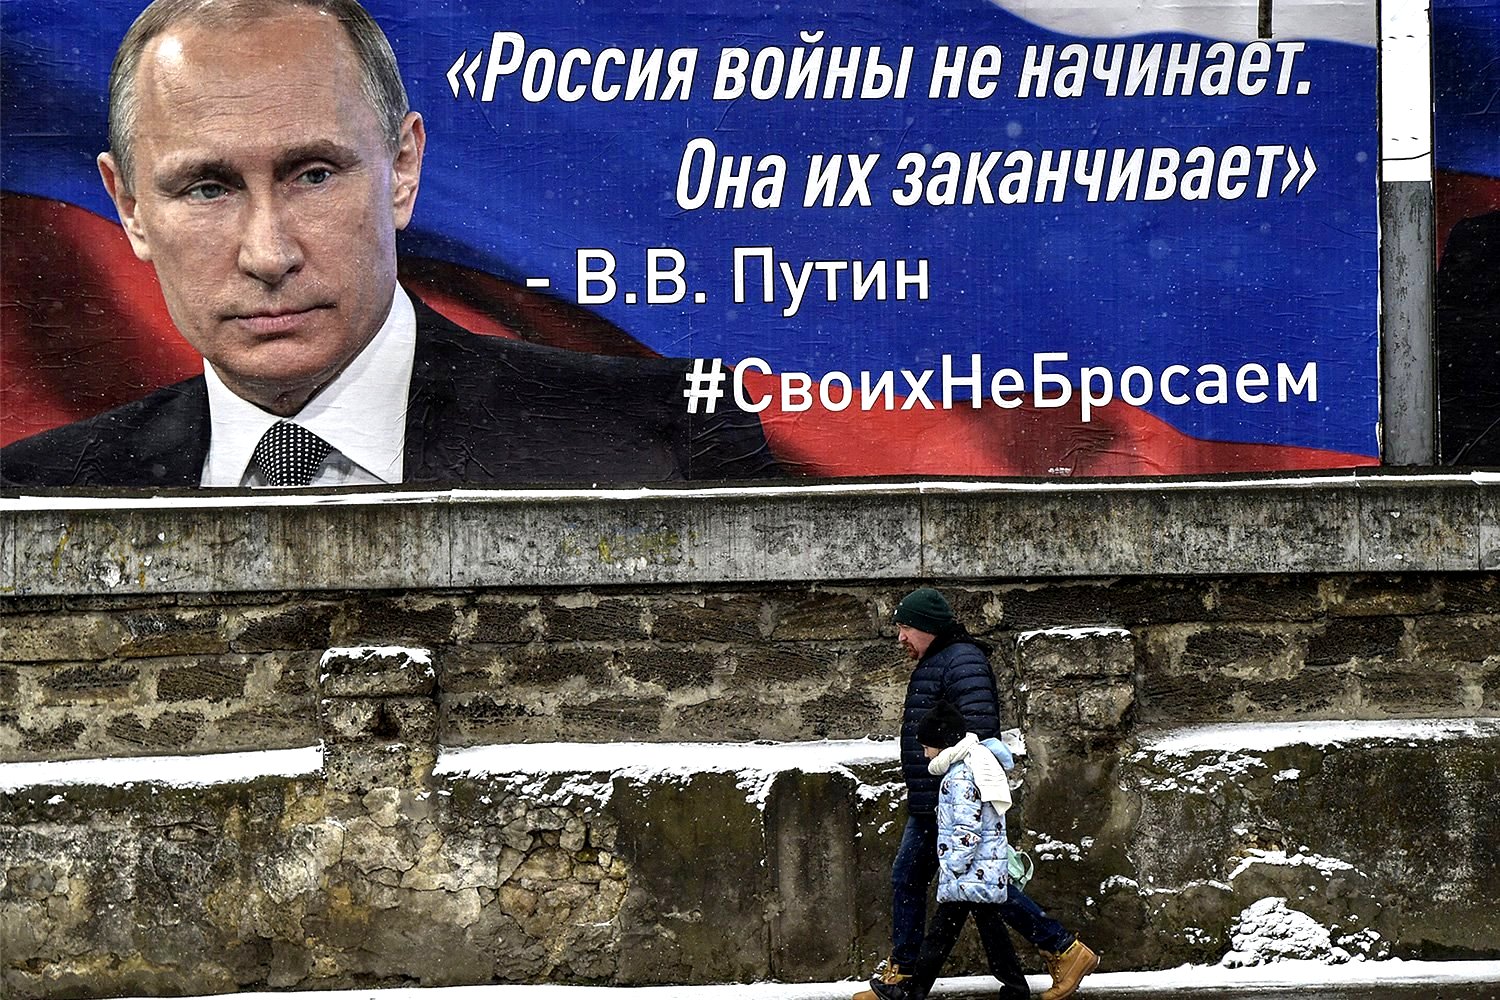 Putin'in Ukrayna'yı işgal etme kararıyla Soğuk Savaş sonrası periyodun bitmesi ne manaya geliyor?